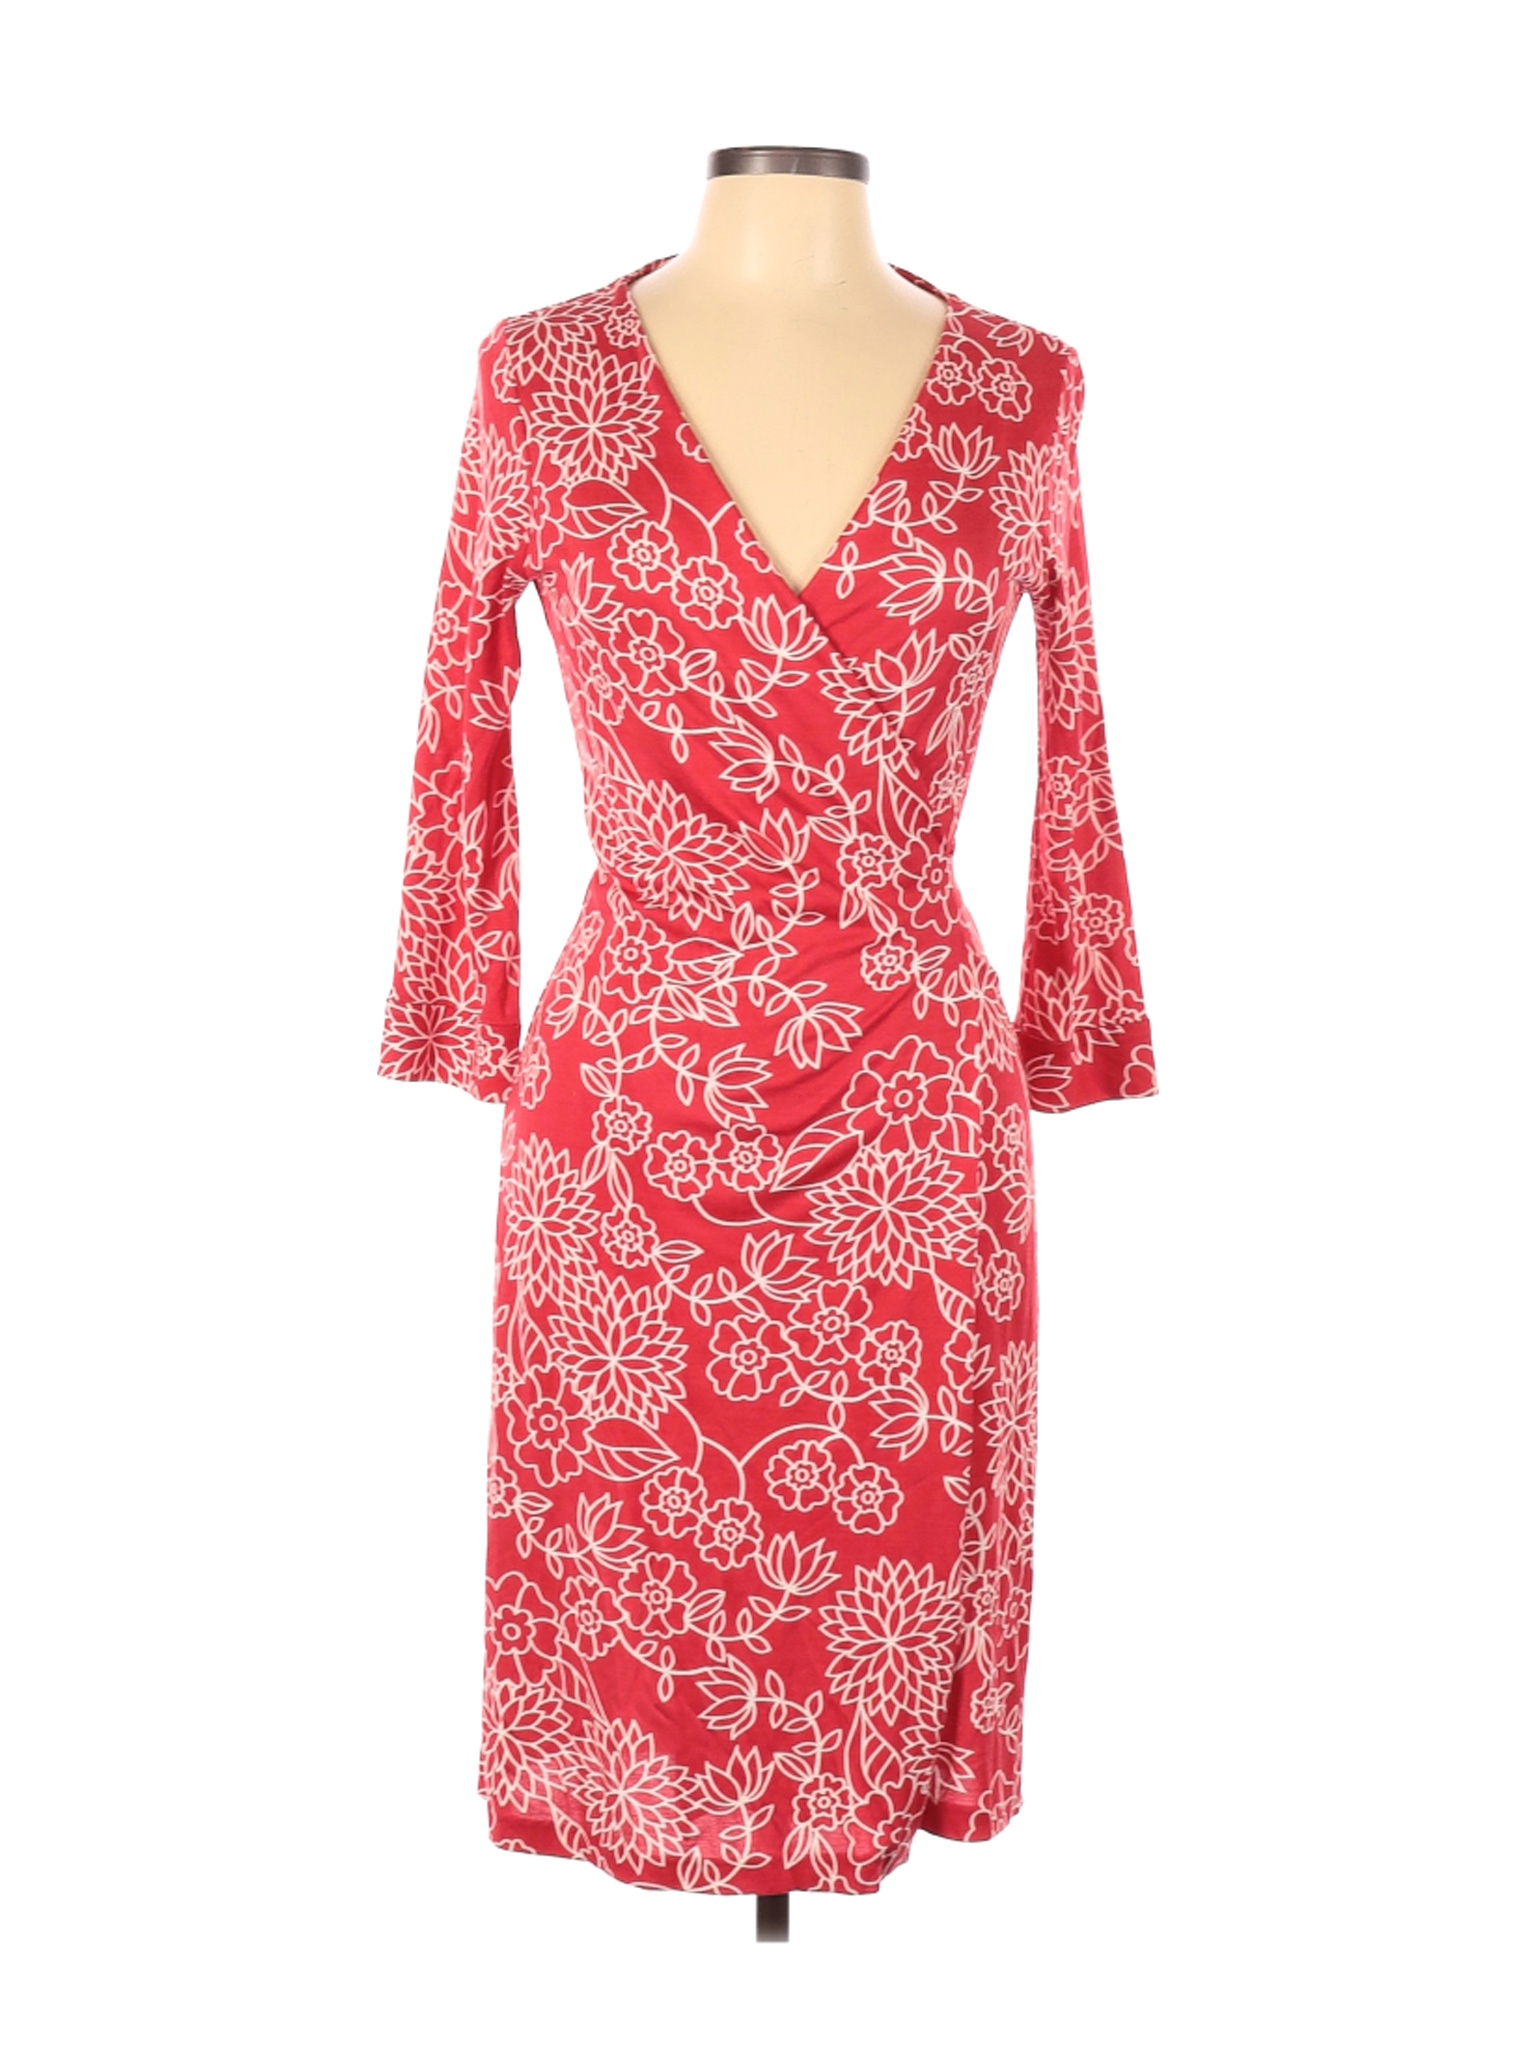 Diane von Furstenberg Women Pink Casual Dress 10 | eBay